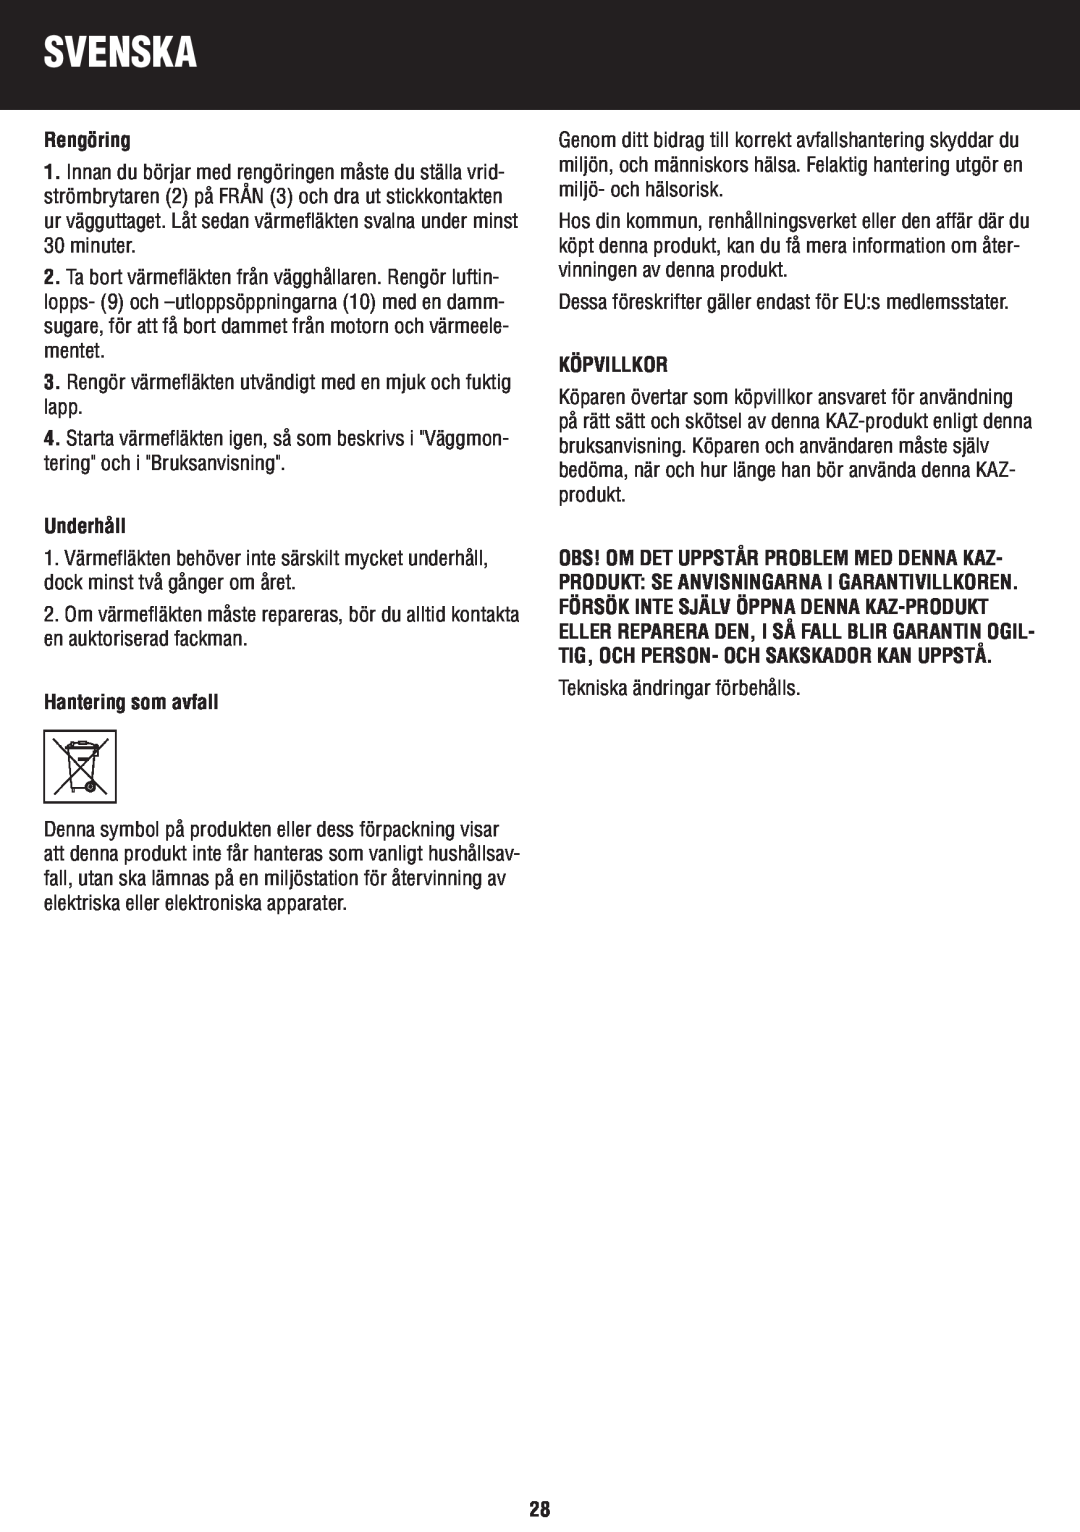 Honeywell BH-777FTE manual do utilizador Rengöring, Underhåll, Hantering som avfall, Köpvillkor, Svenska 